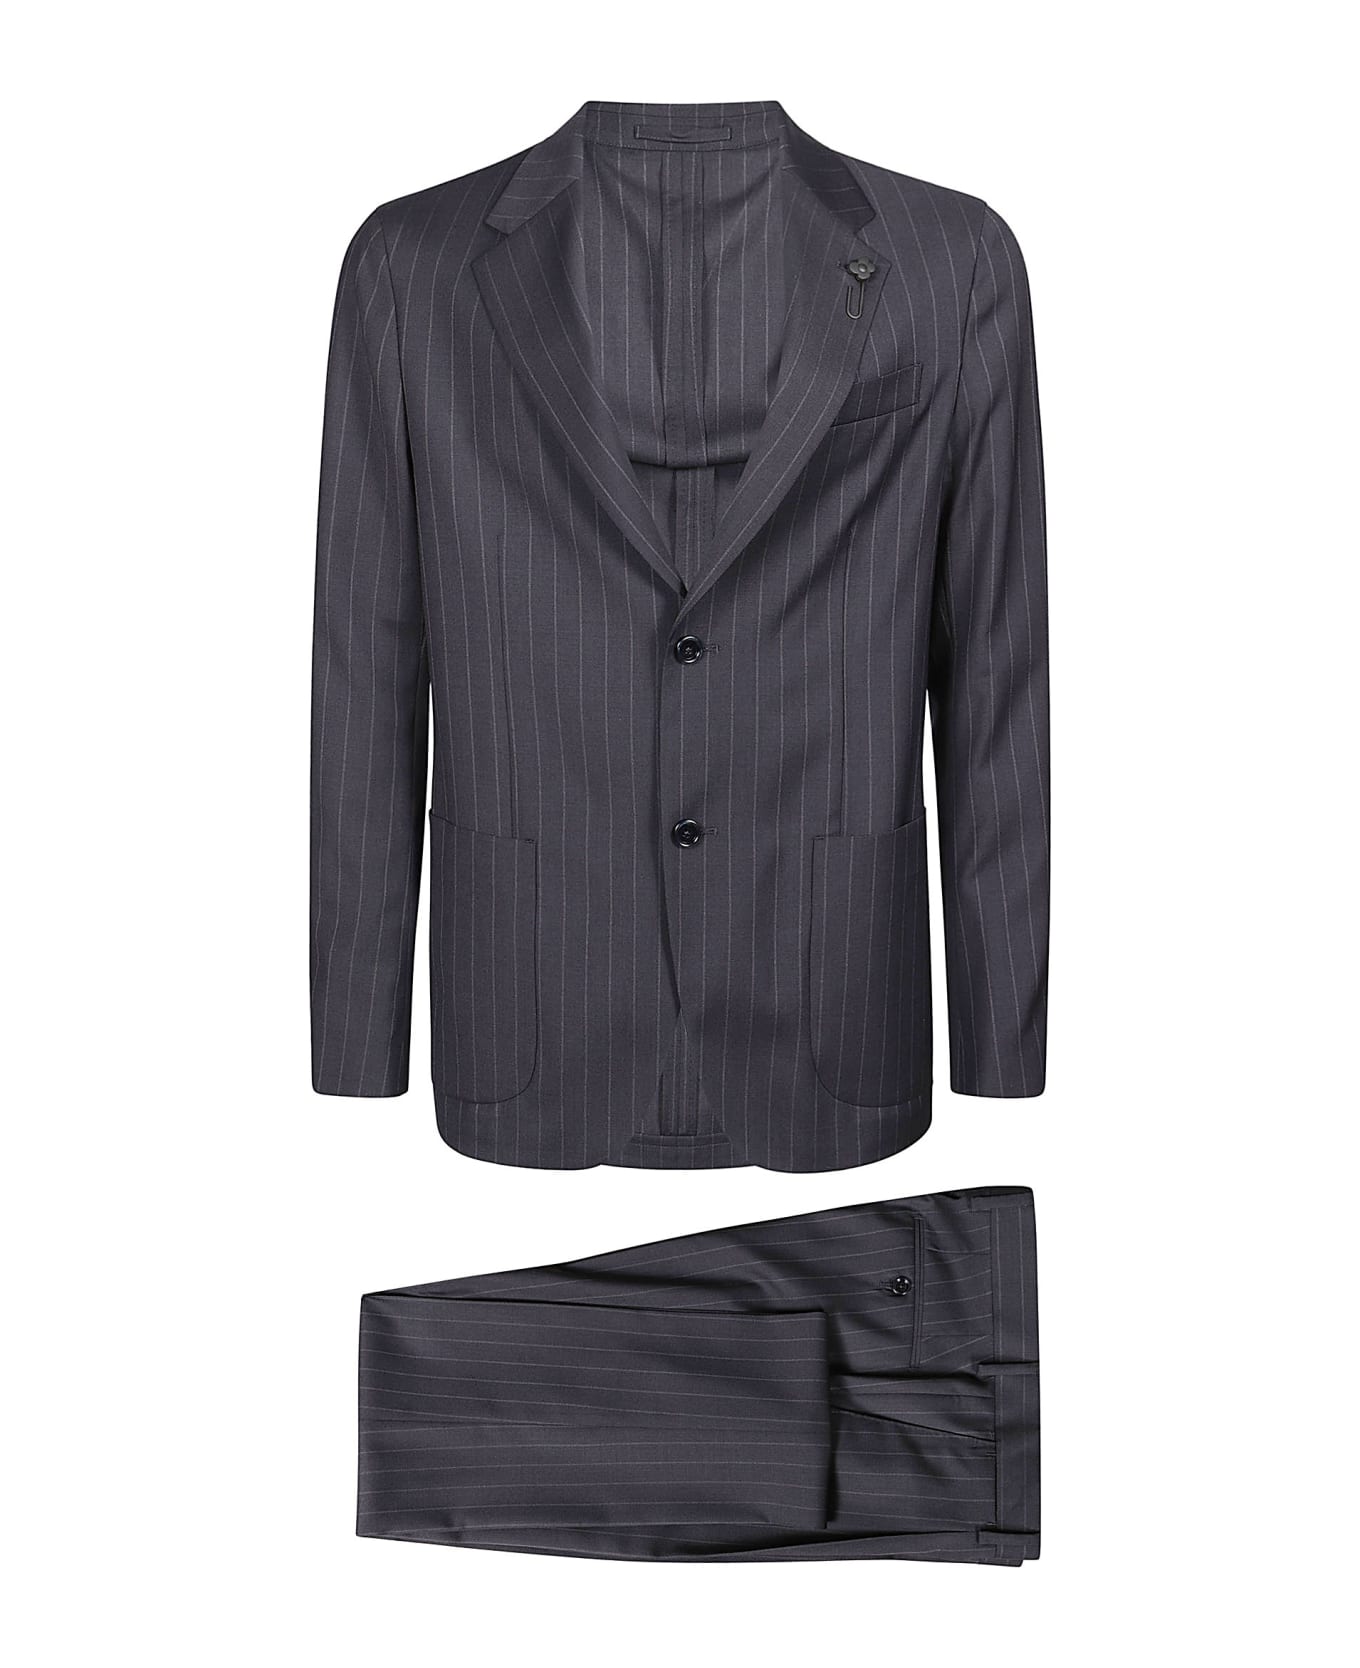 Lardini Easy Wear Suit - Blu スーツ